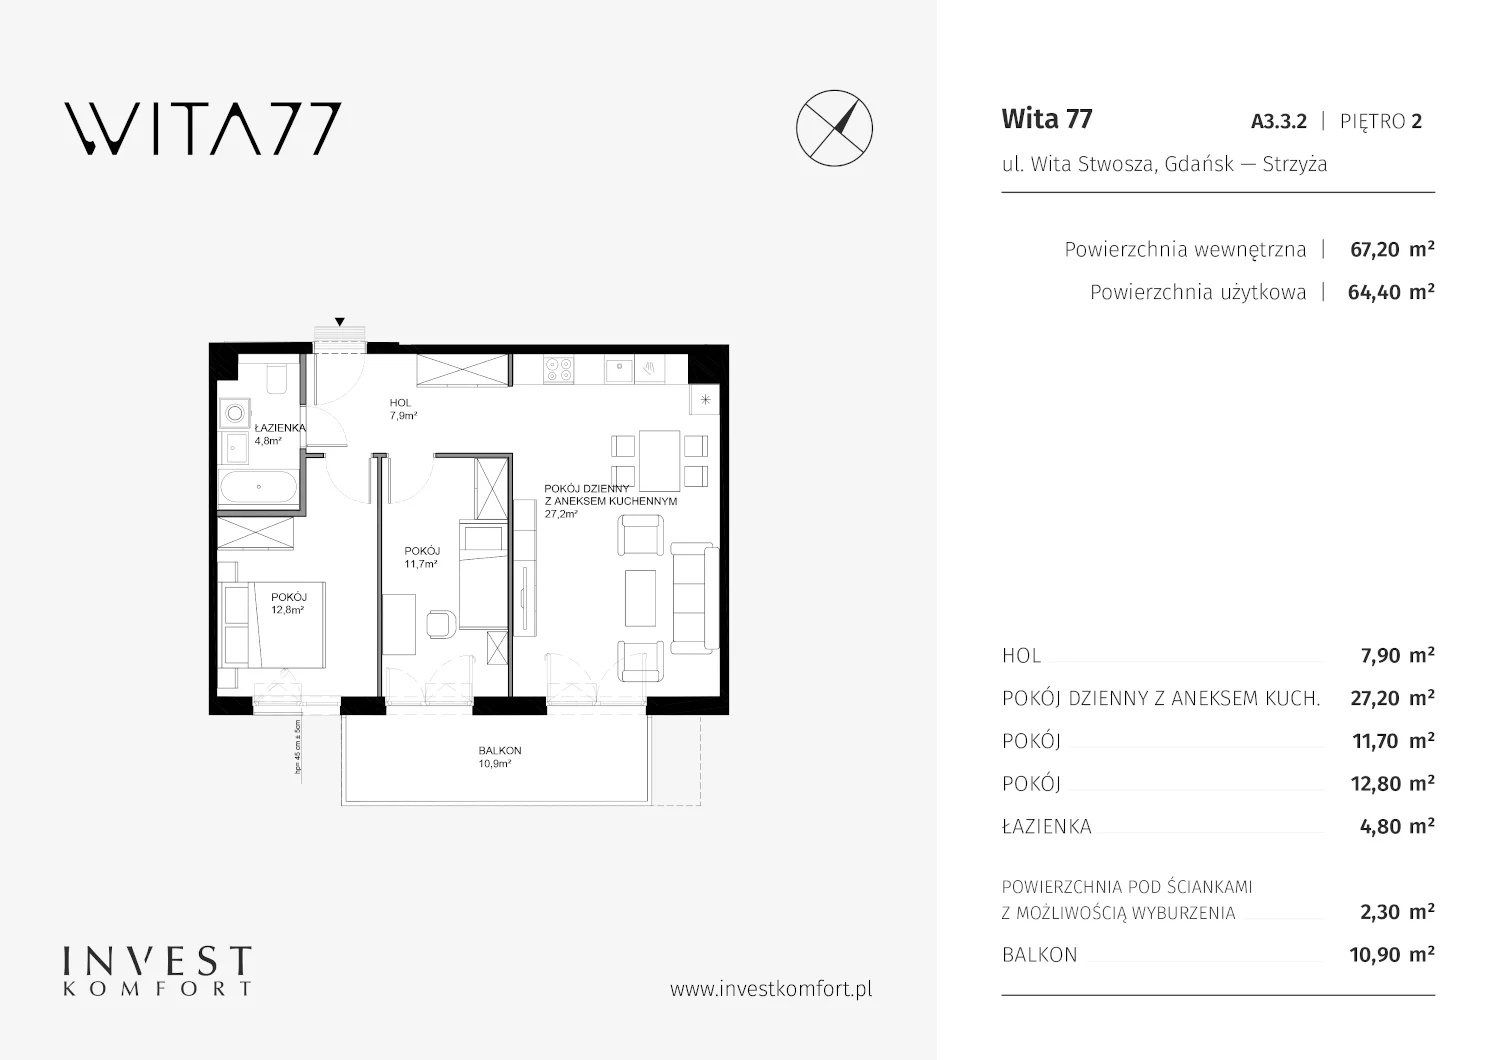 Mieszkanie 67,20 m², piętro 2, oferta nr A3.3.2, Wita 77, Gdańsk, Strzyża, ul. Wita Stwosza 77